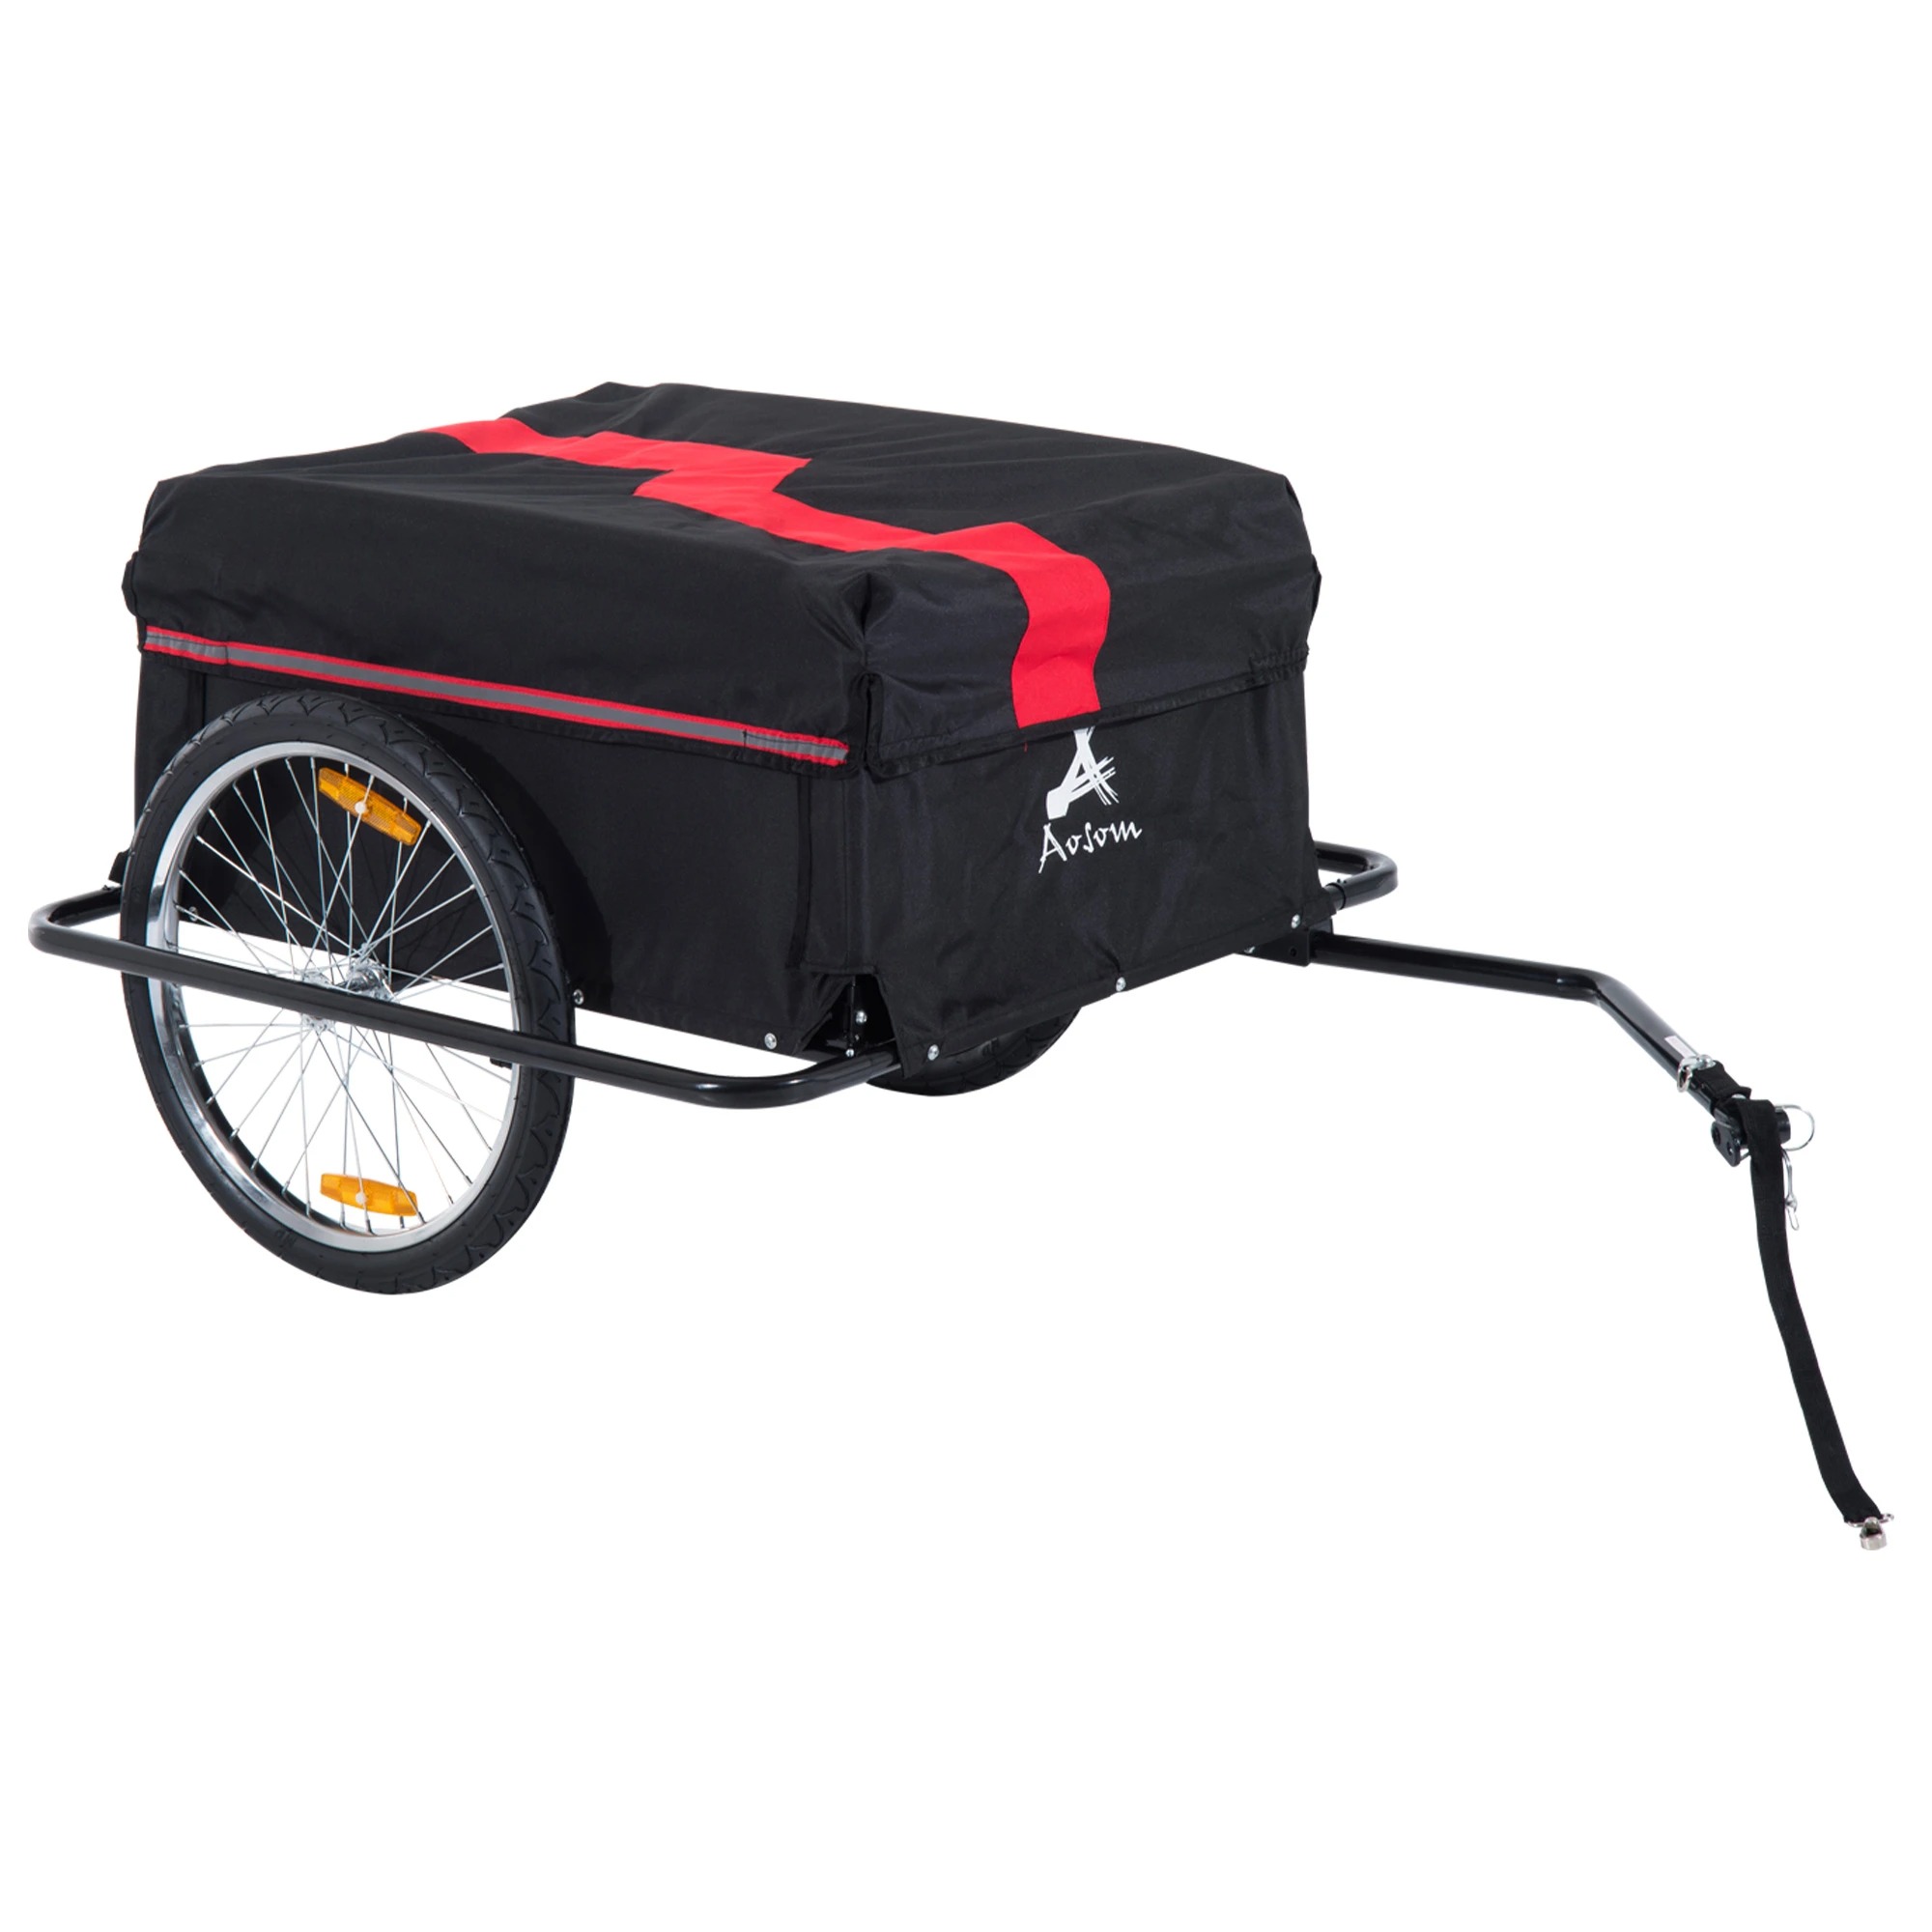 Aosom Elite II Bike Cargo And Luggage Trailer - Red/Black